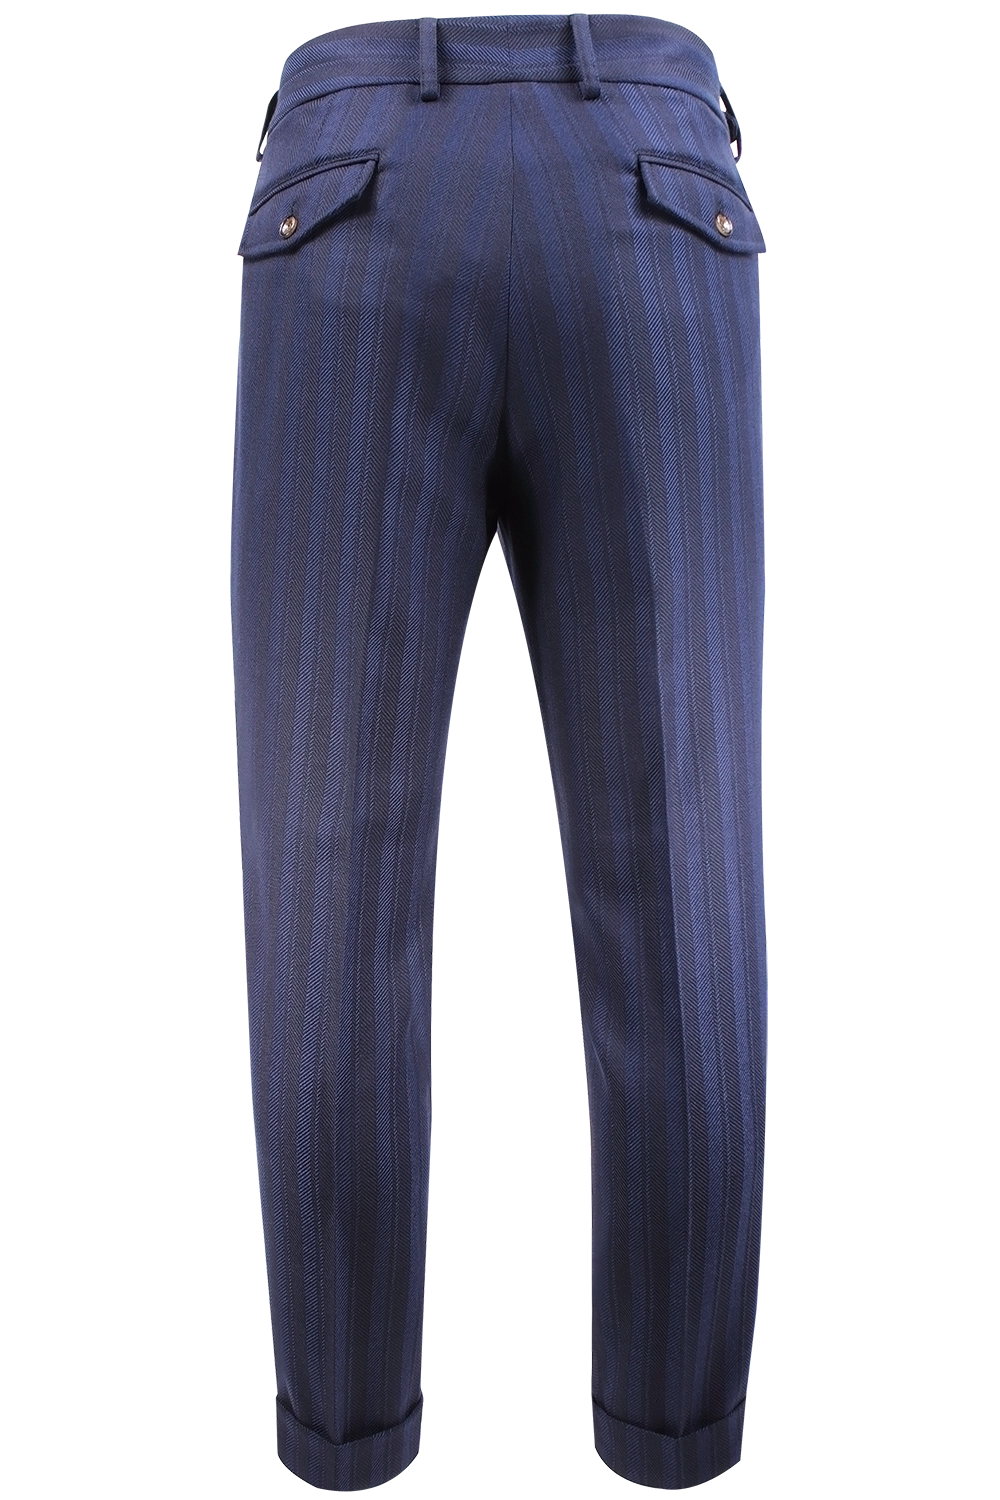 Pantalone con due pinces in lana a righe blu retro